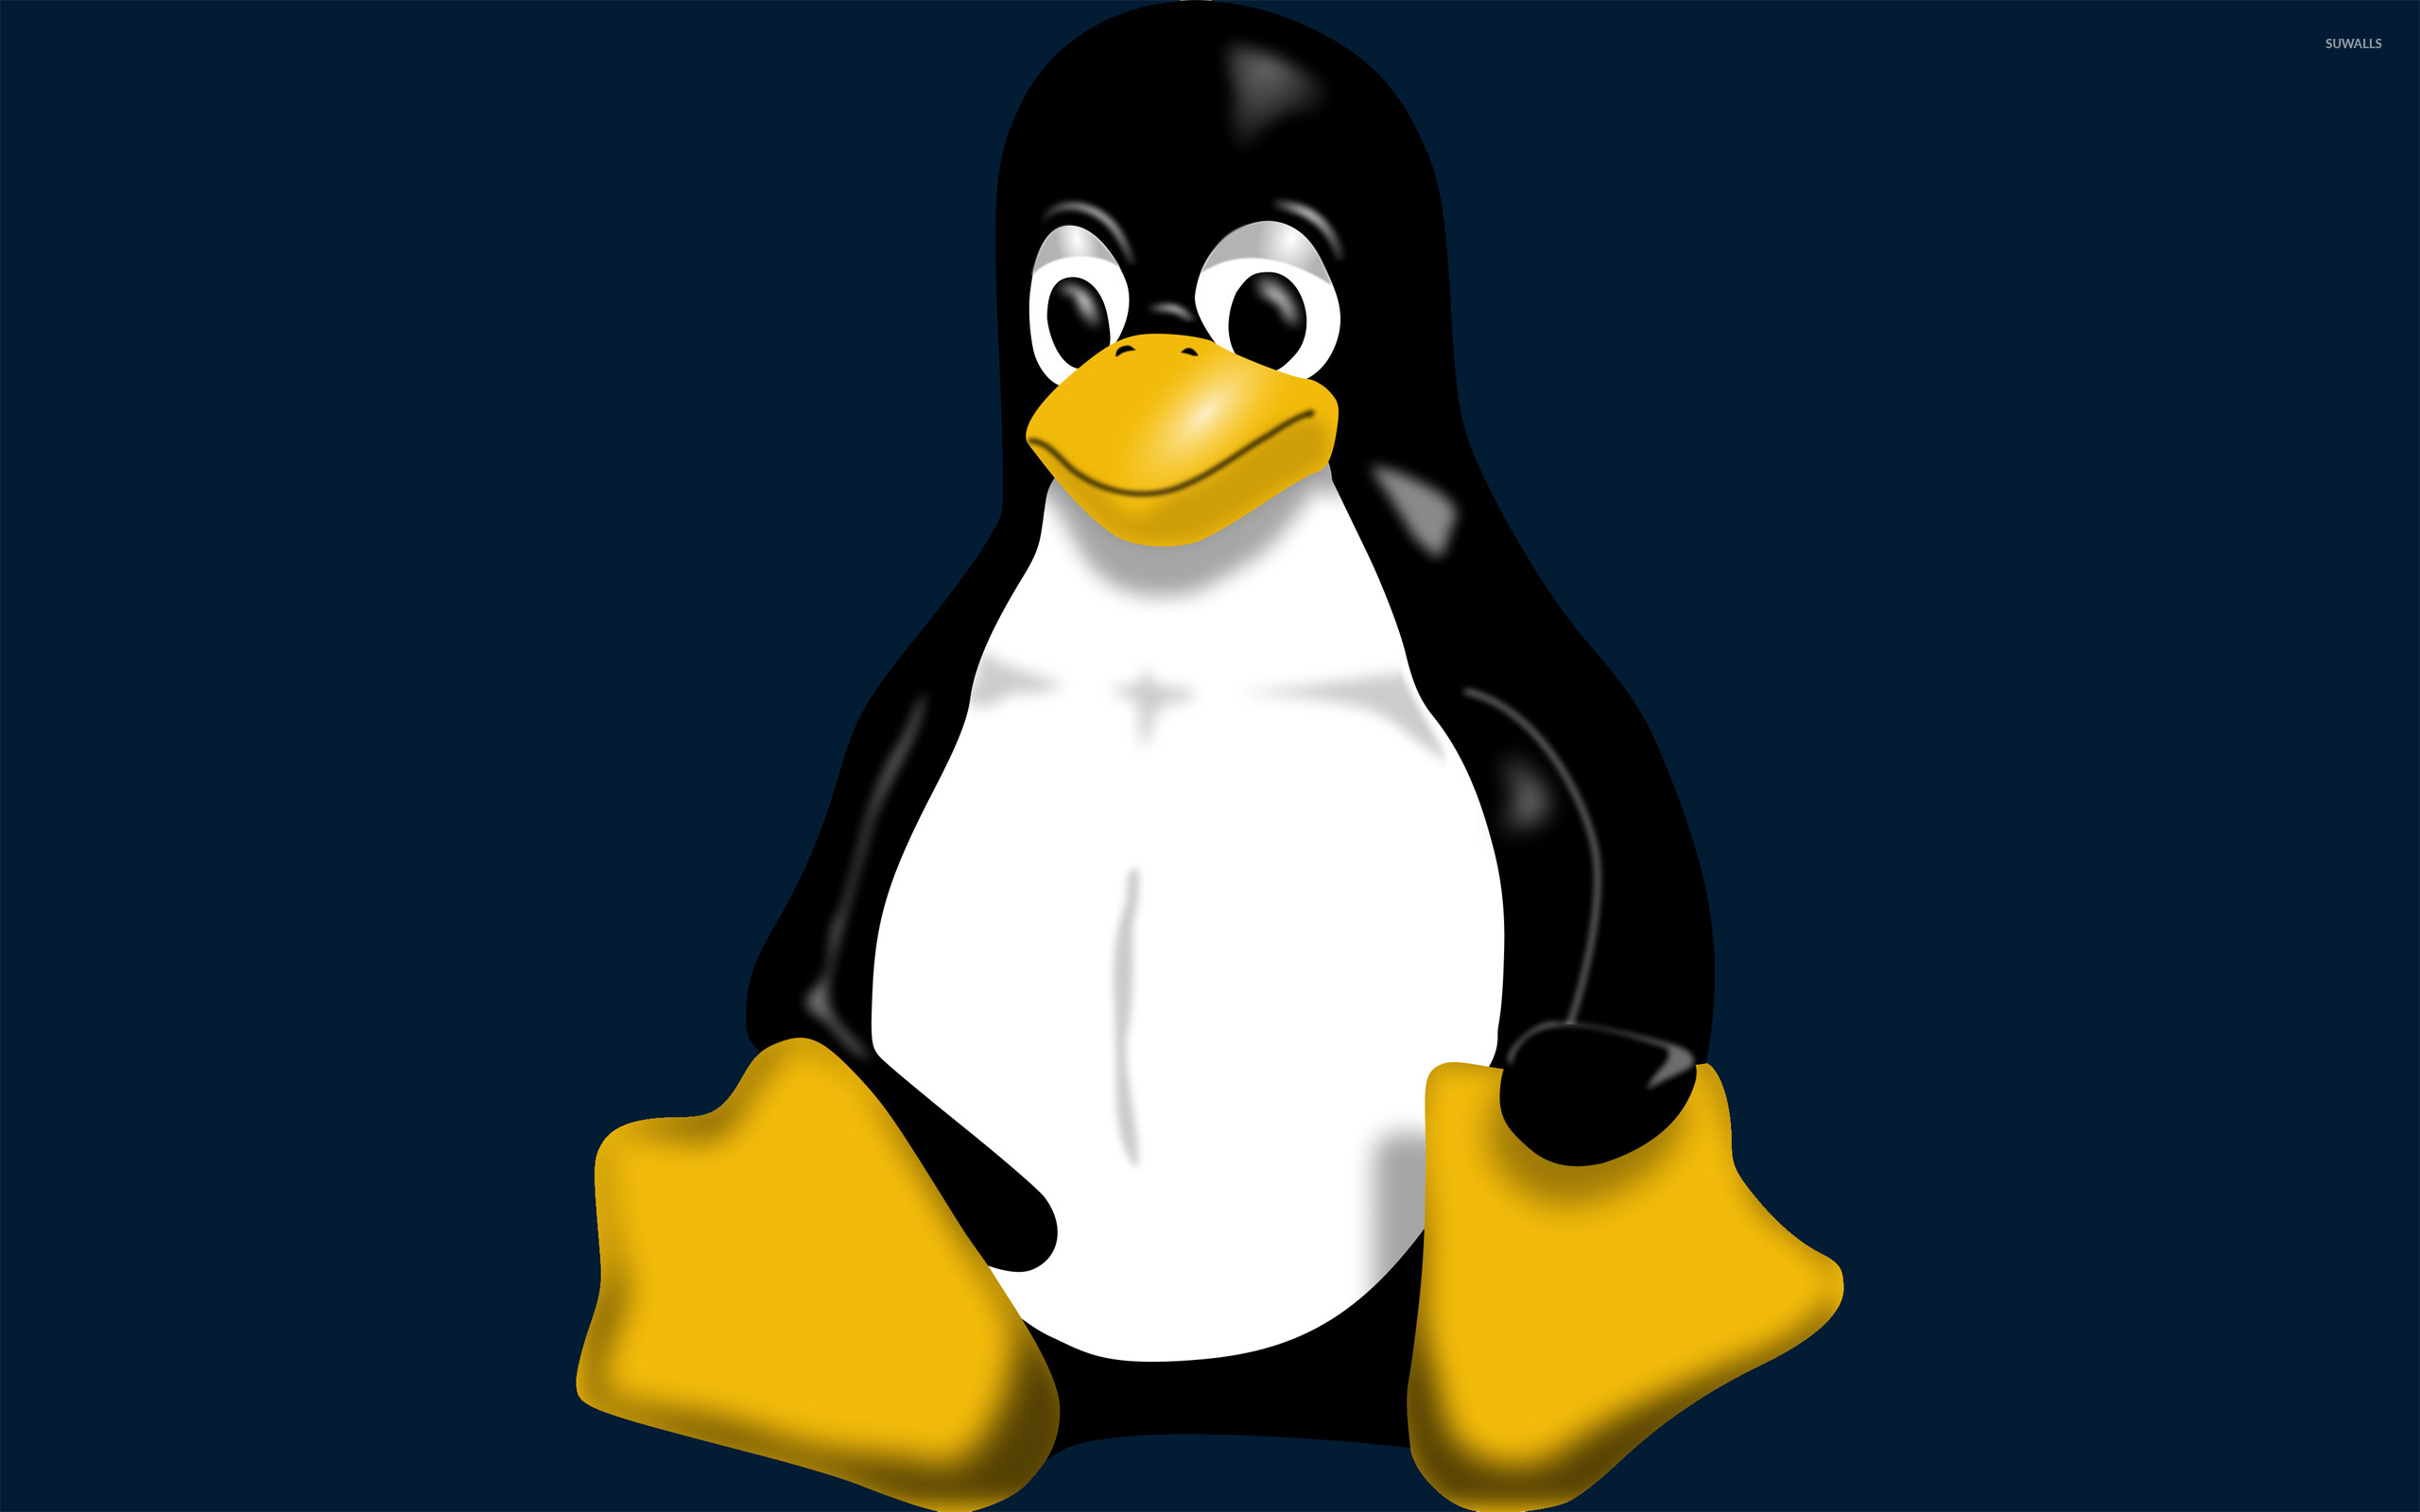 Linux docs. Изображения с расширением bmp. Рисунки с расширением bmp. Файлы с расширением bmp. Пингвин линукс.